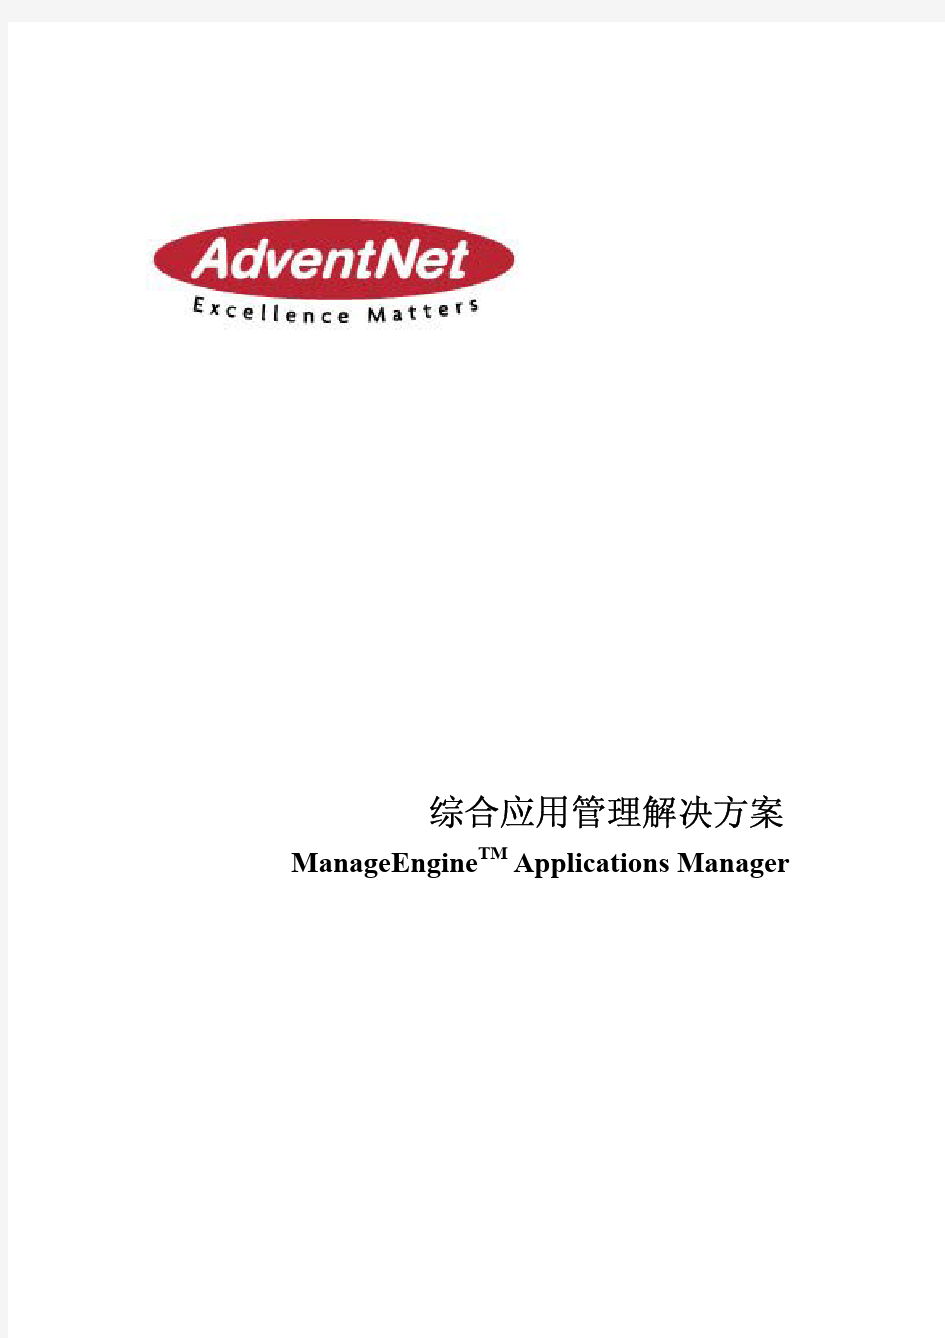 综合应用管理解决方案 ManageEngineTM Applications Manager